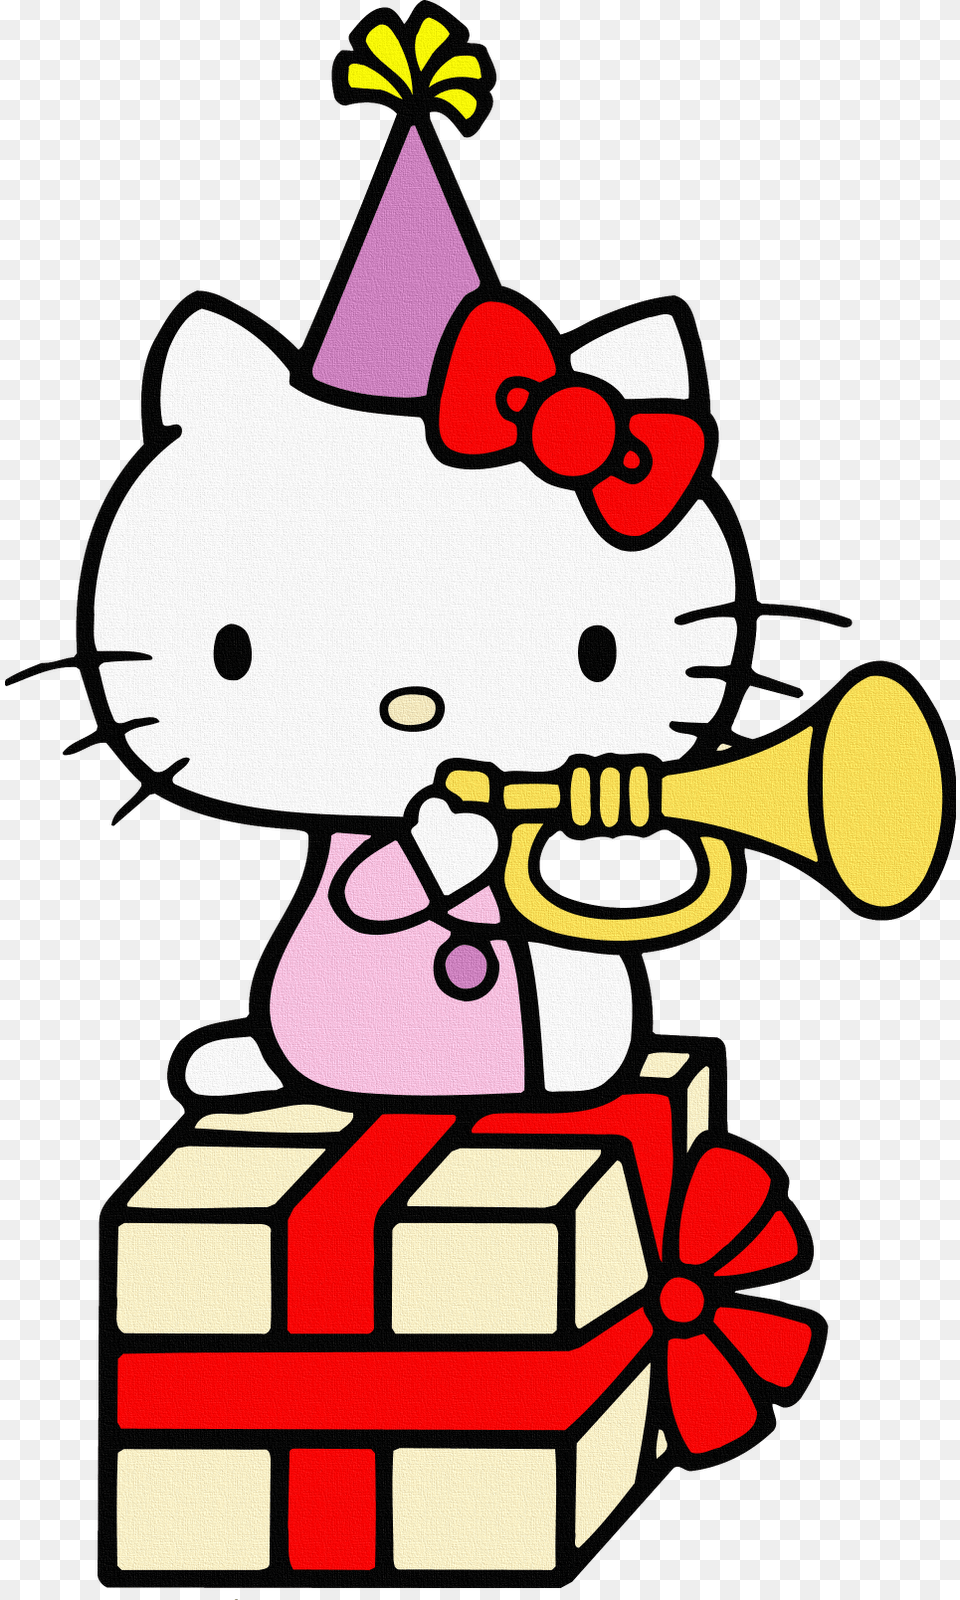 Imagens Em Alta Resoluamp231amp227o Com Fundo Transparente Hello Kitty, Clothing, Hat, Baby, Person Free Transparent Png